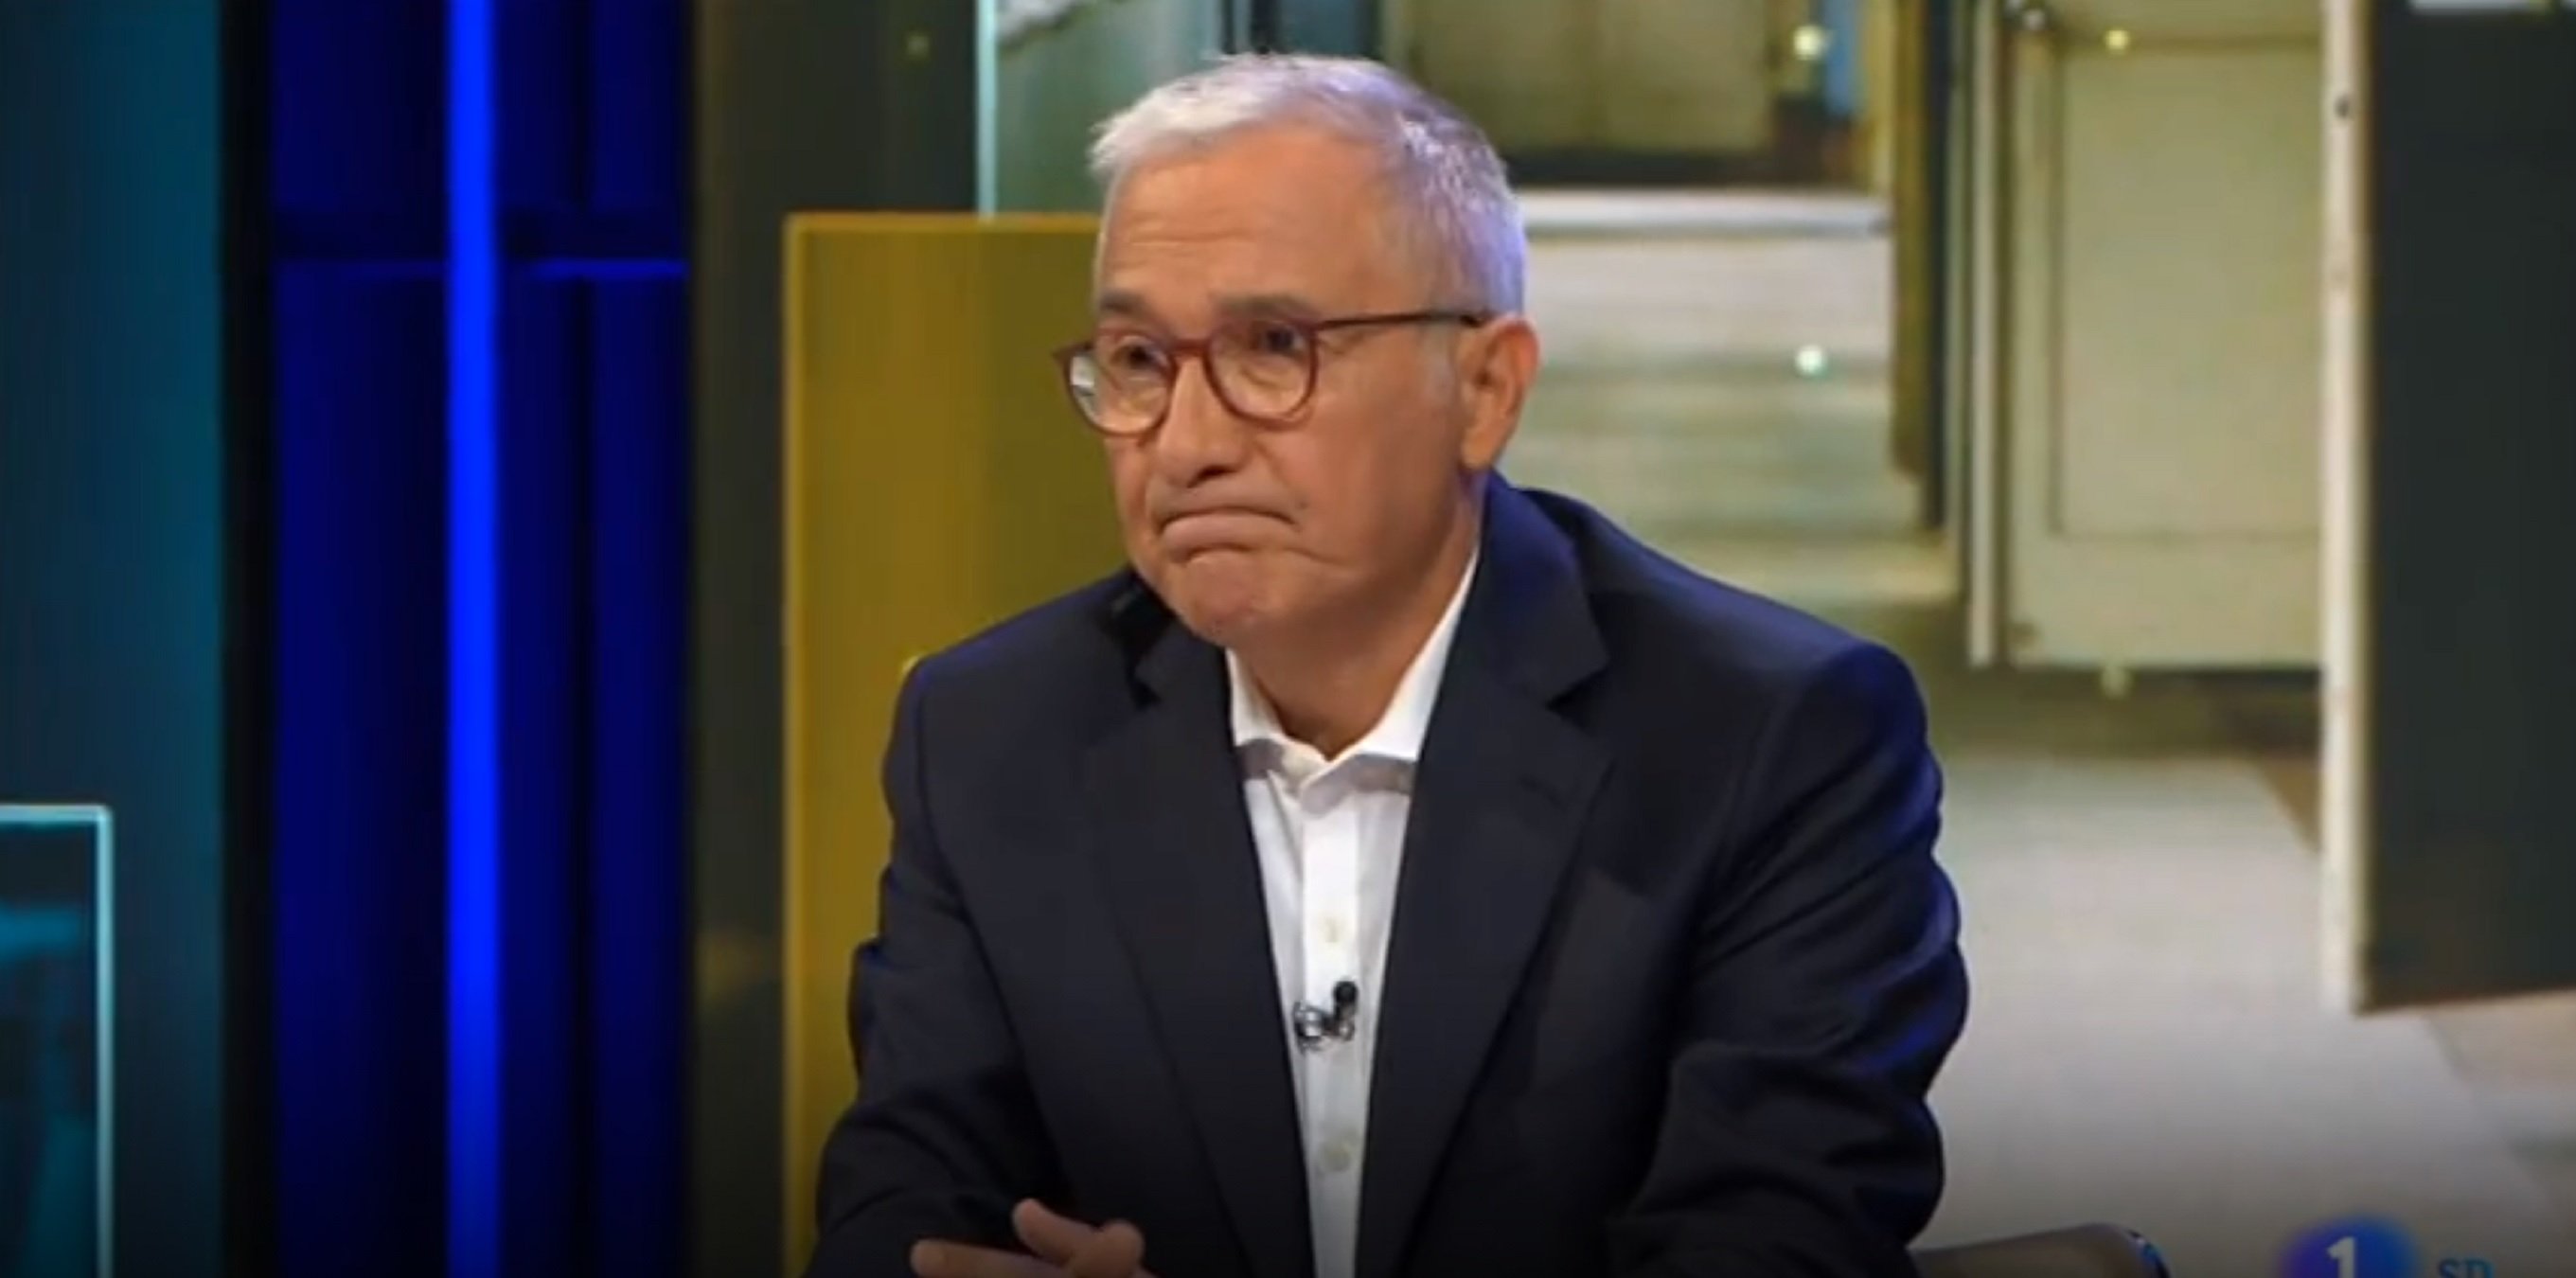 Mala audiencia del debate de Xavier Sardà en TVE con copresentadora ex de TV3